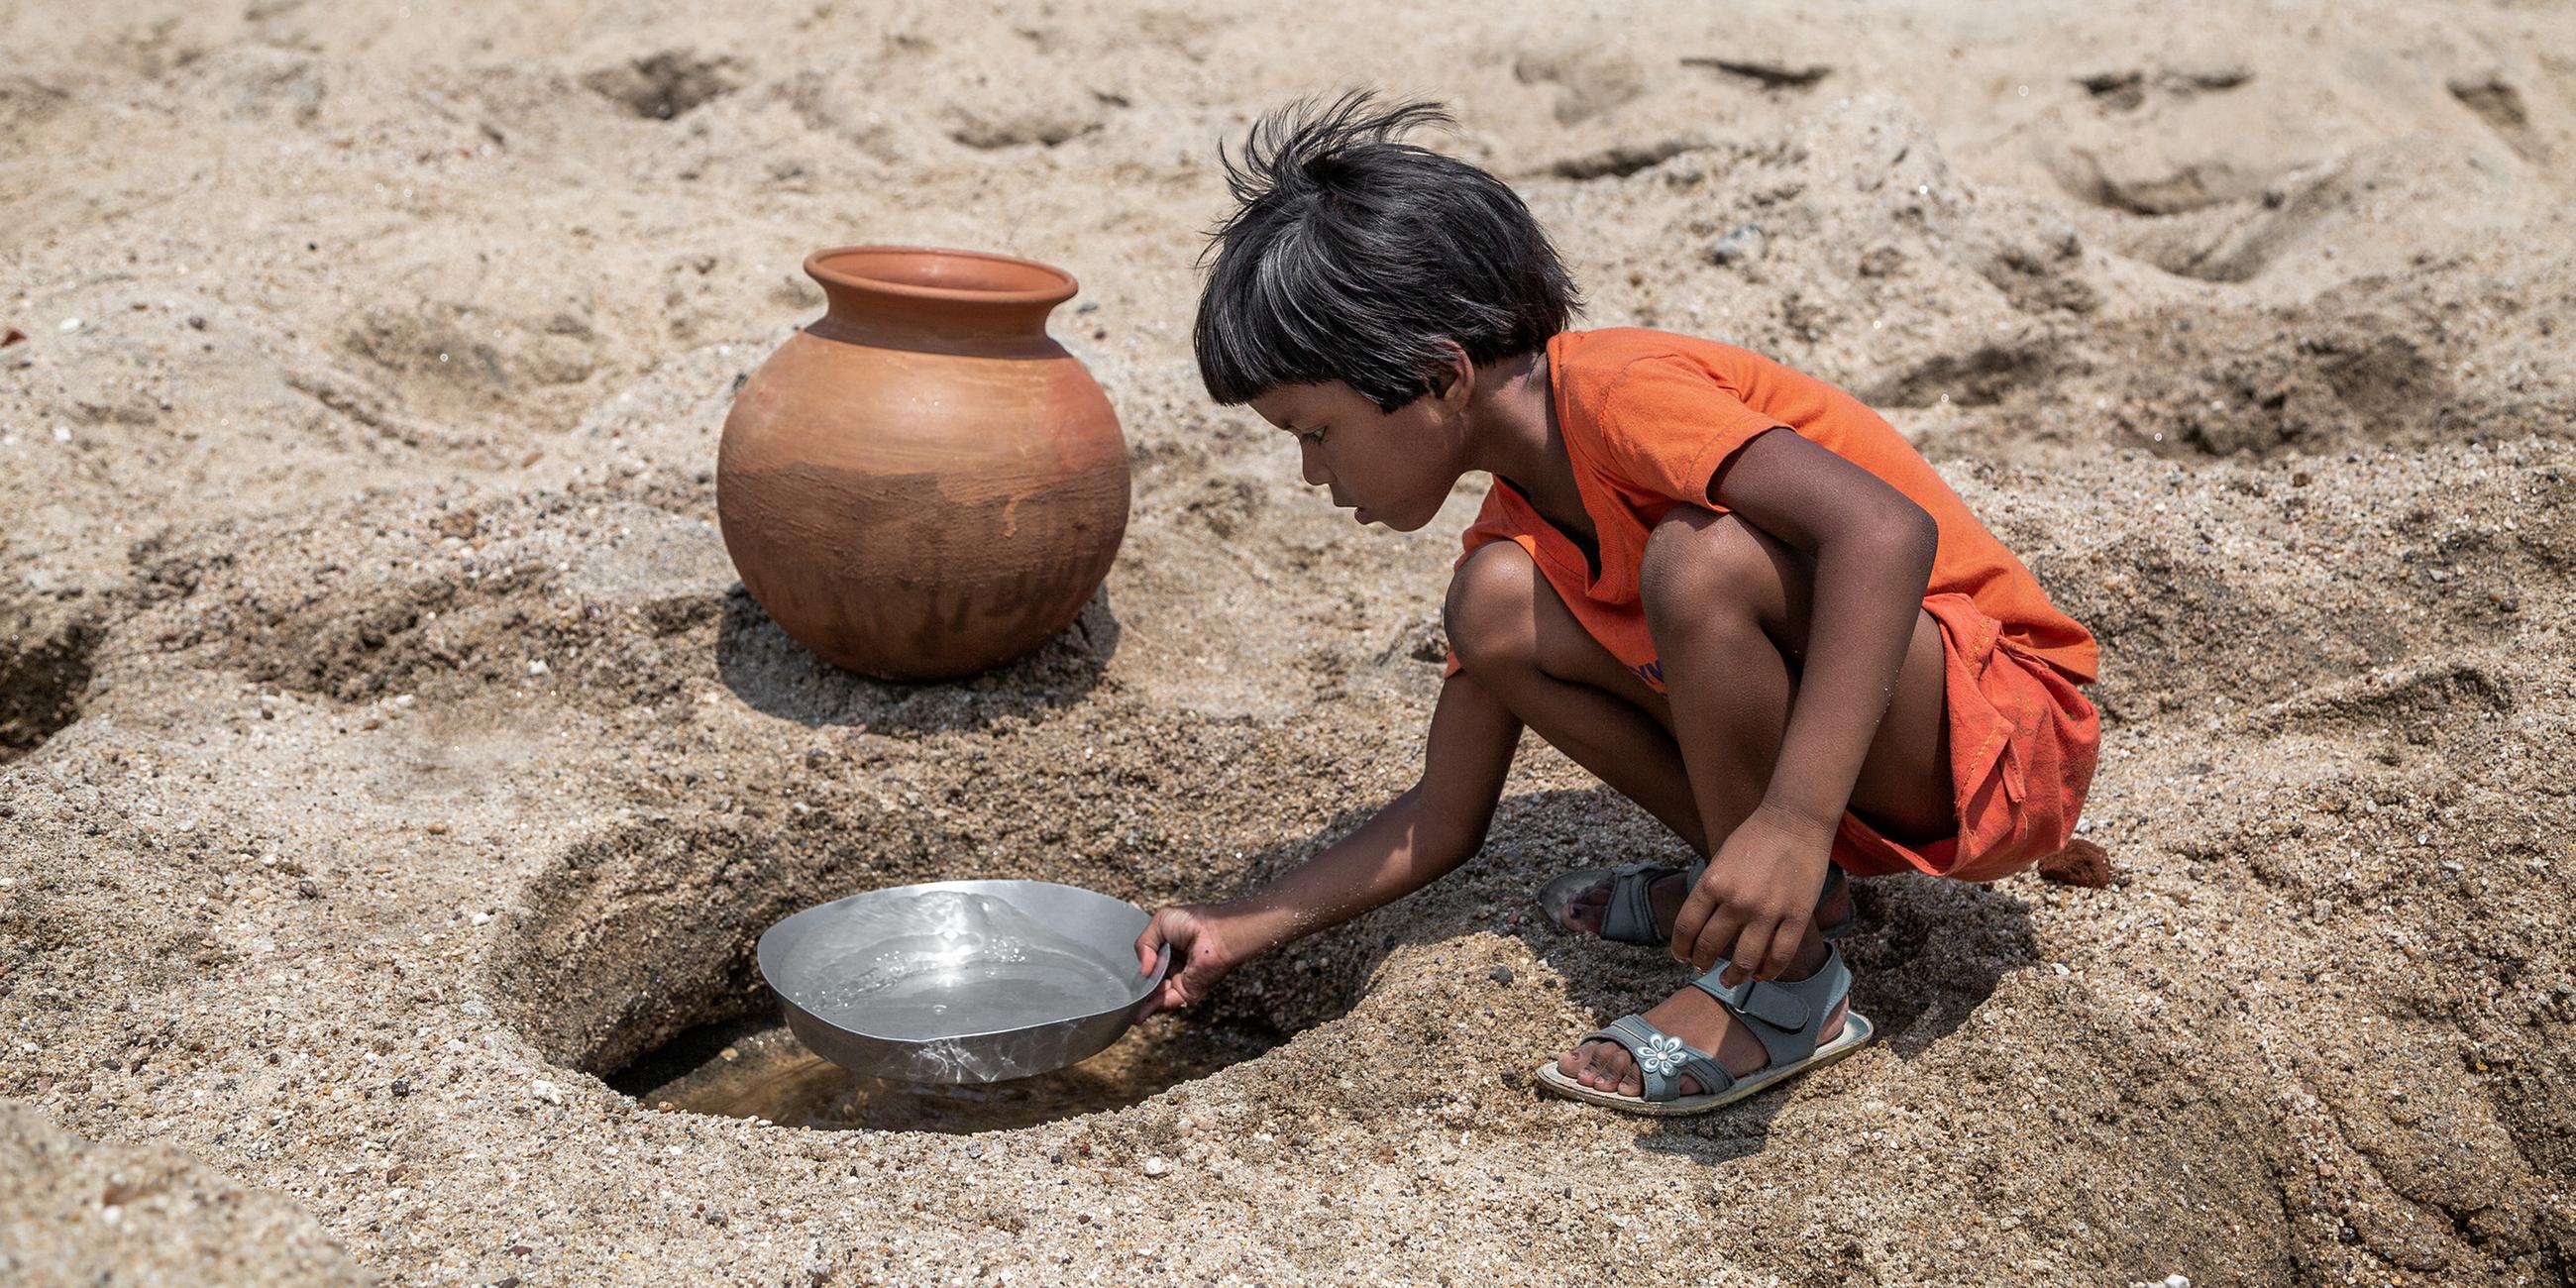 ©Supratim Bhattacharjee, Indien, Reportage: Das Schicksal der kleinen Wasserträger (Indien)